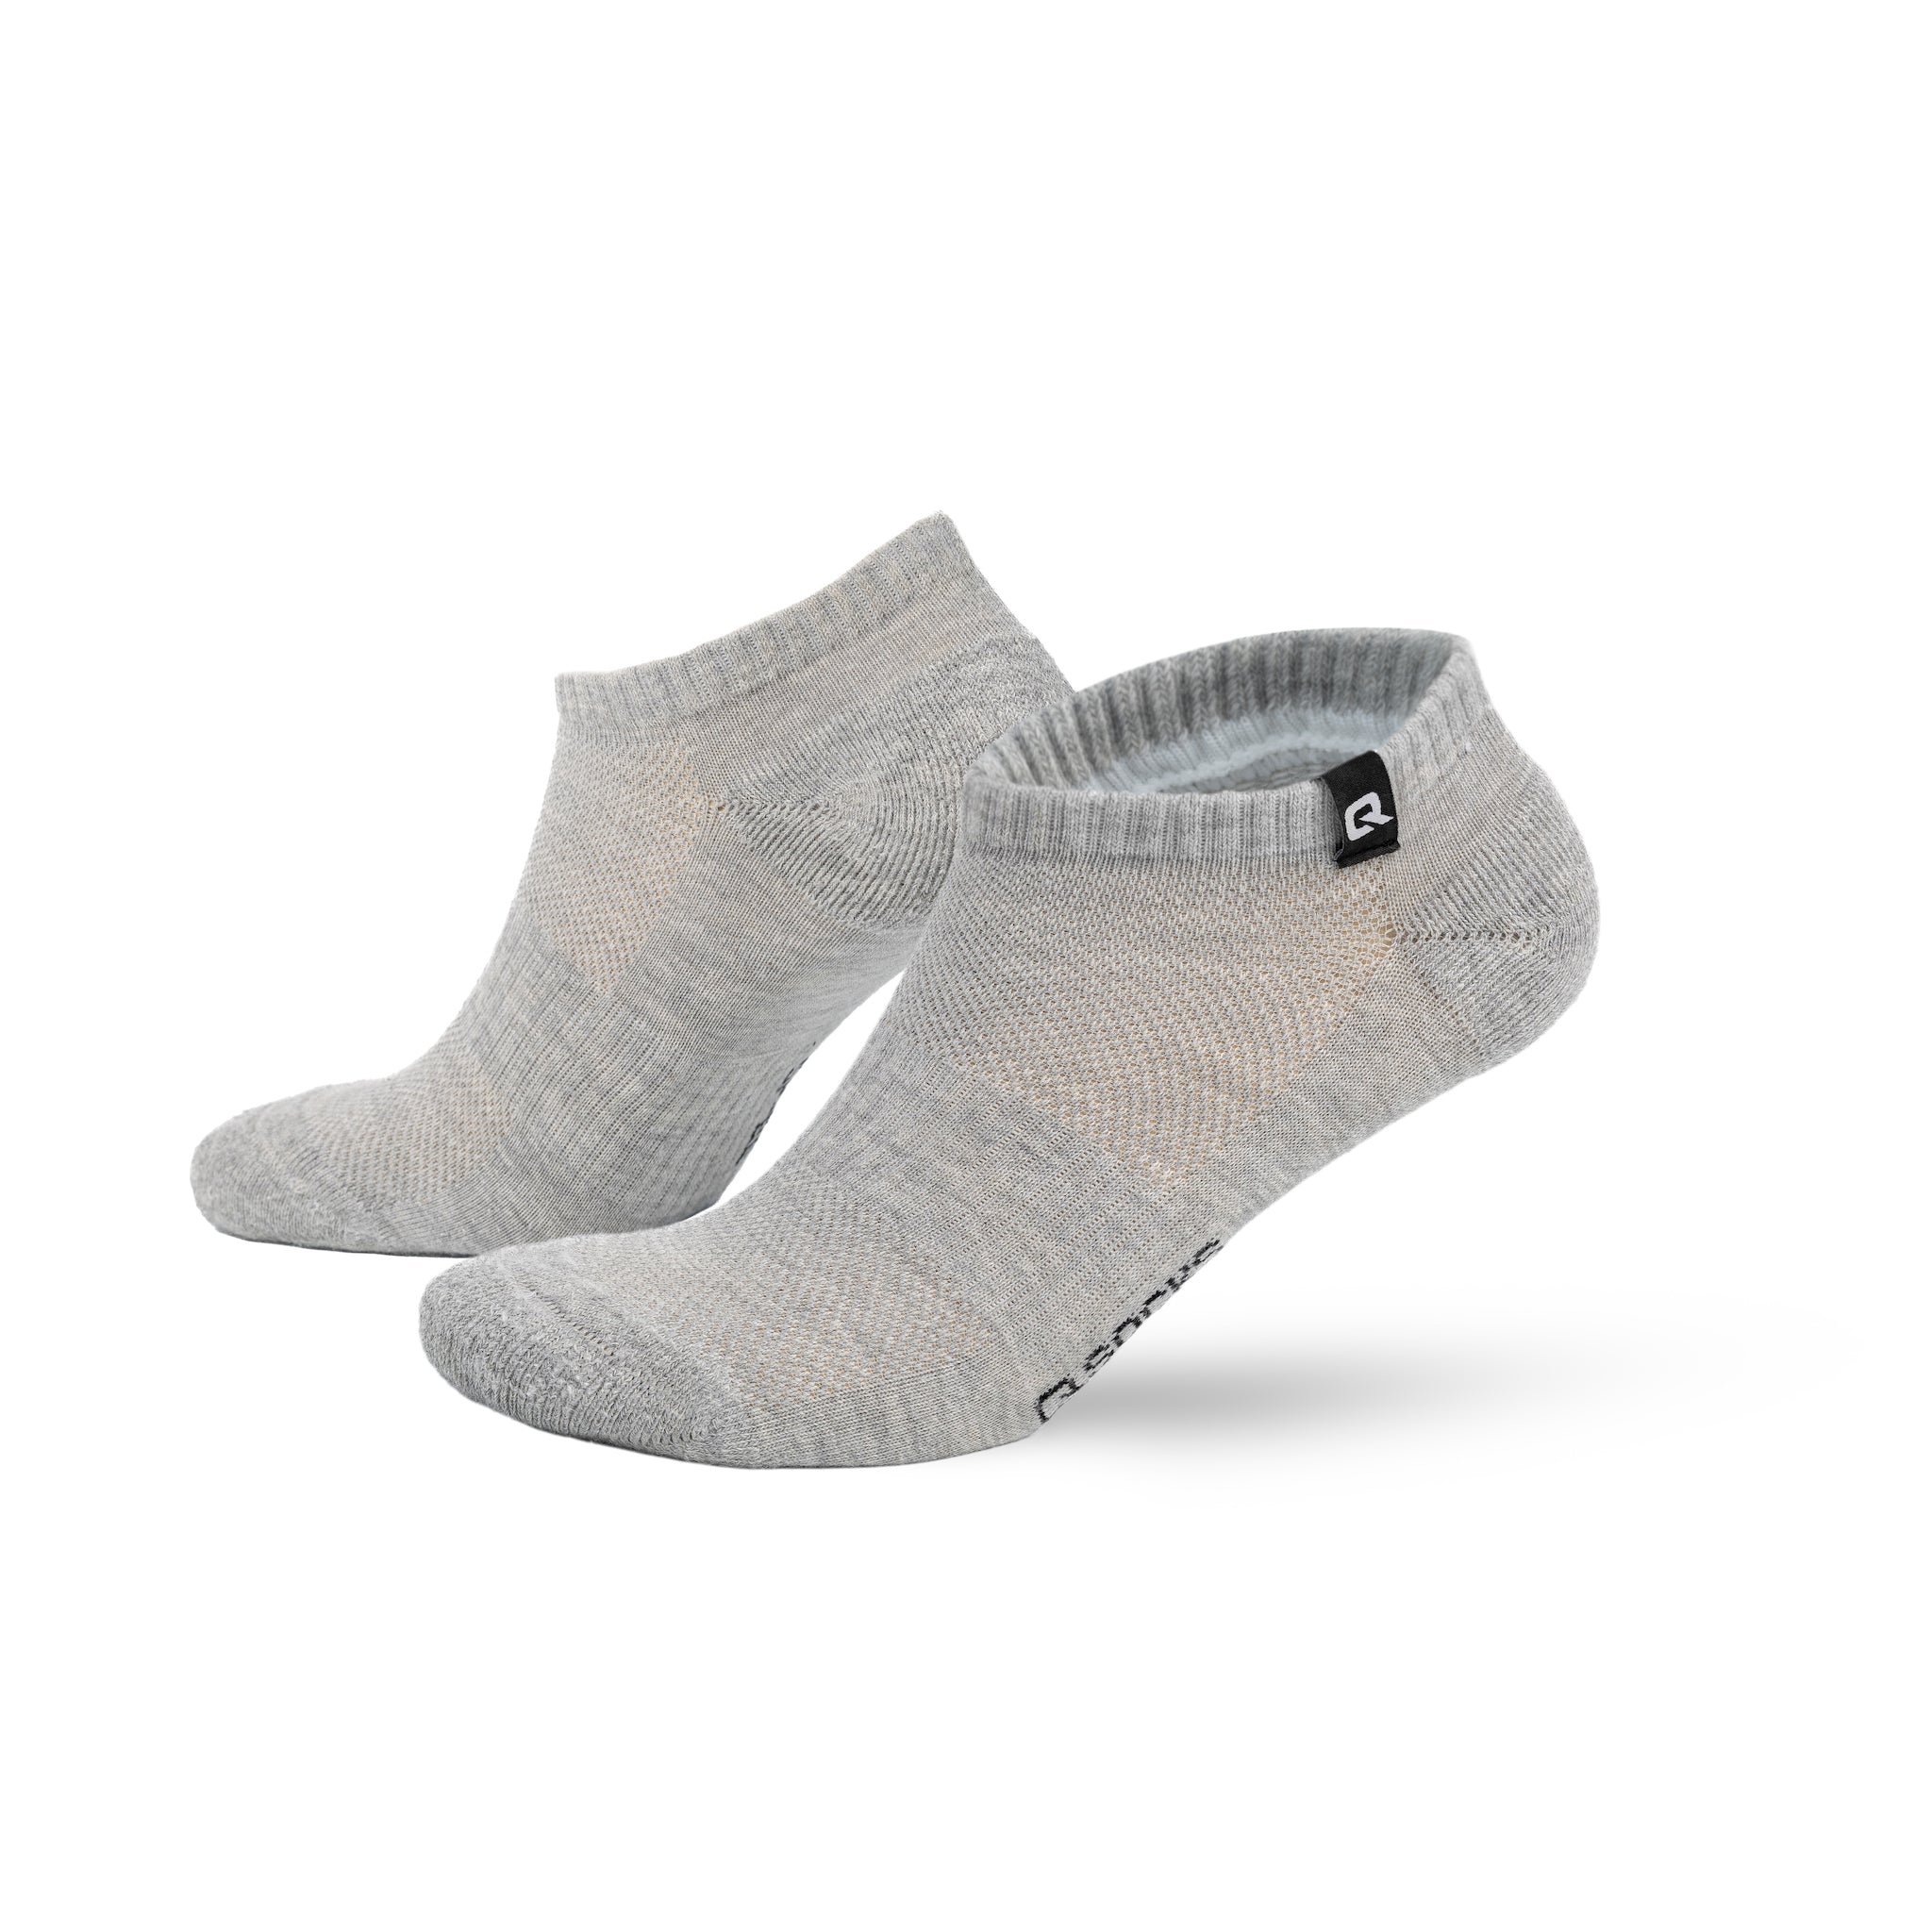 High quality sneaker socks | QSOCKS sneaker socks | q socks